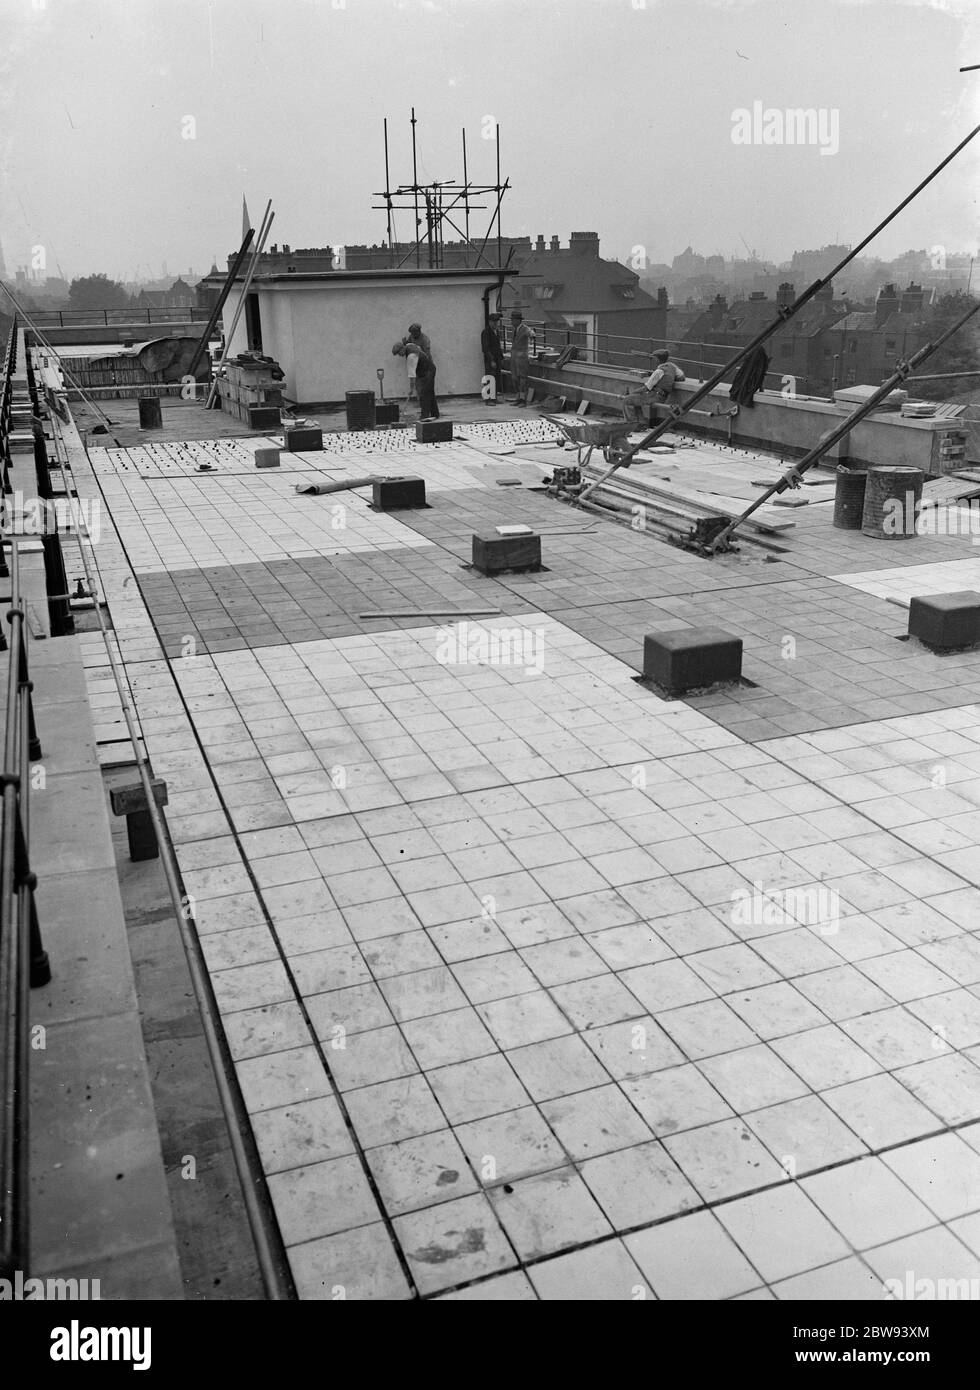 Lavoratori della Val De Travers Asphalt Limited , una società di pavimentazione , che lavorano alla pavimentazione del tetto del London Jewish Hospital di Steppey Green . 1938 Foto Stock